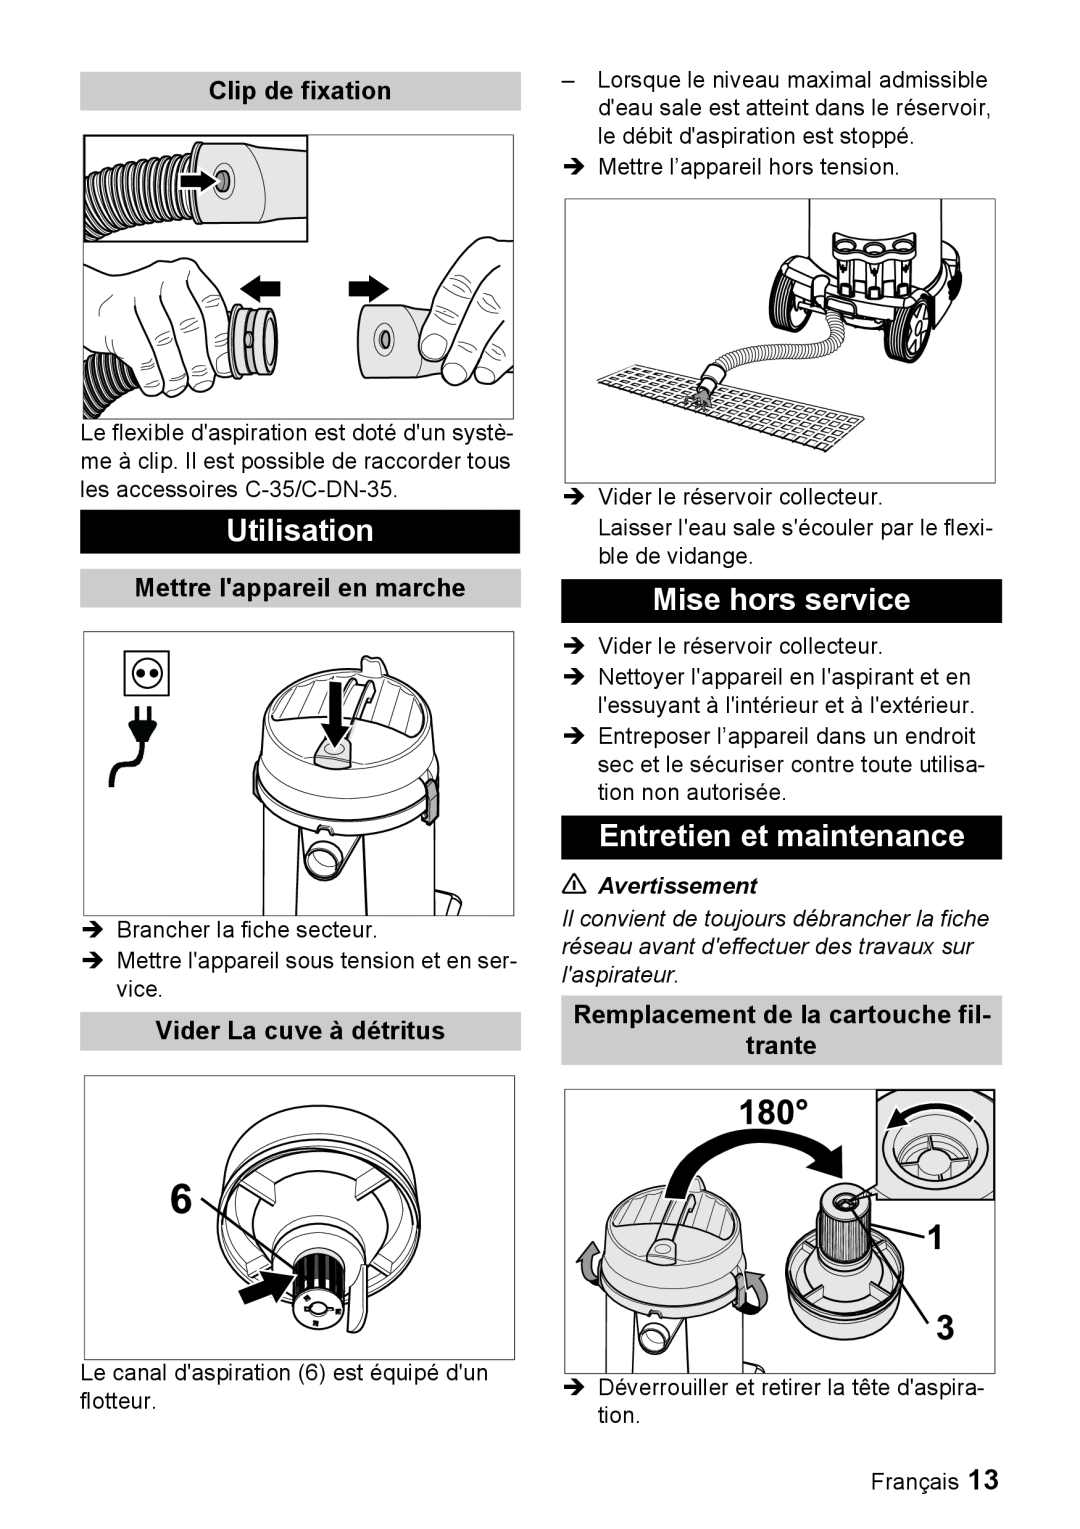 Windsor 12 manual Utilisation, Mise hors service, Entretien et maintenance, Clip de fixation, Mettre lappareil en marche 